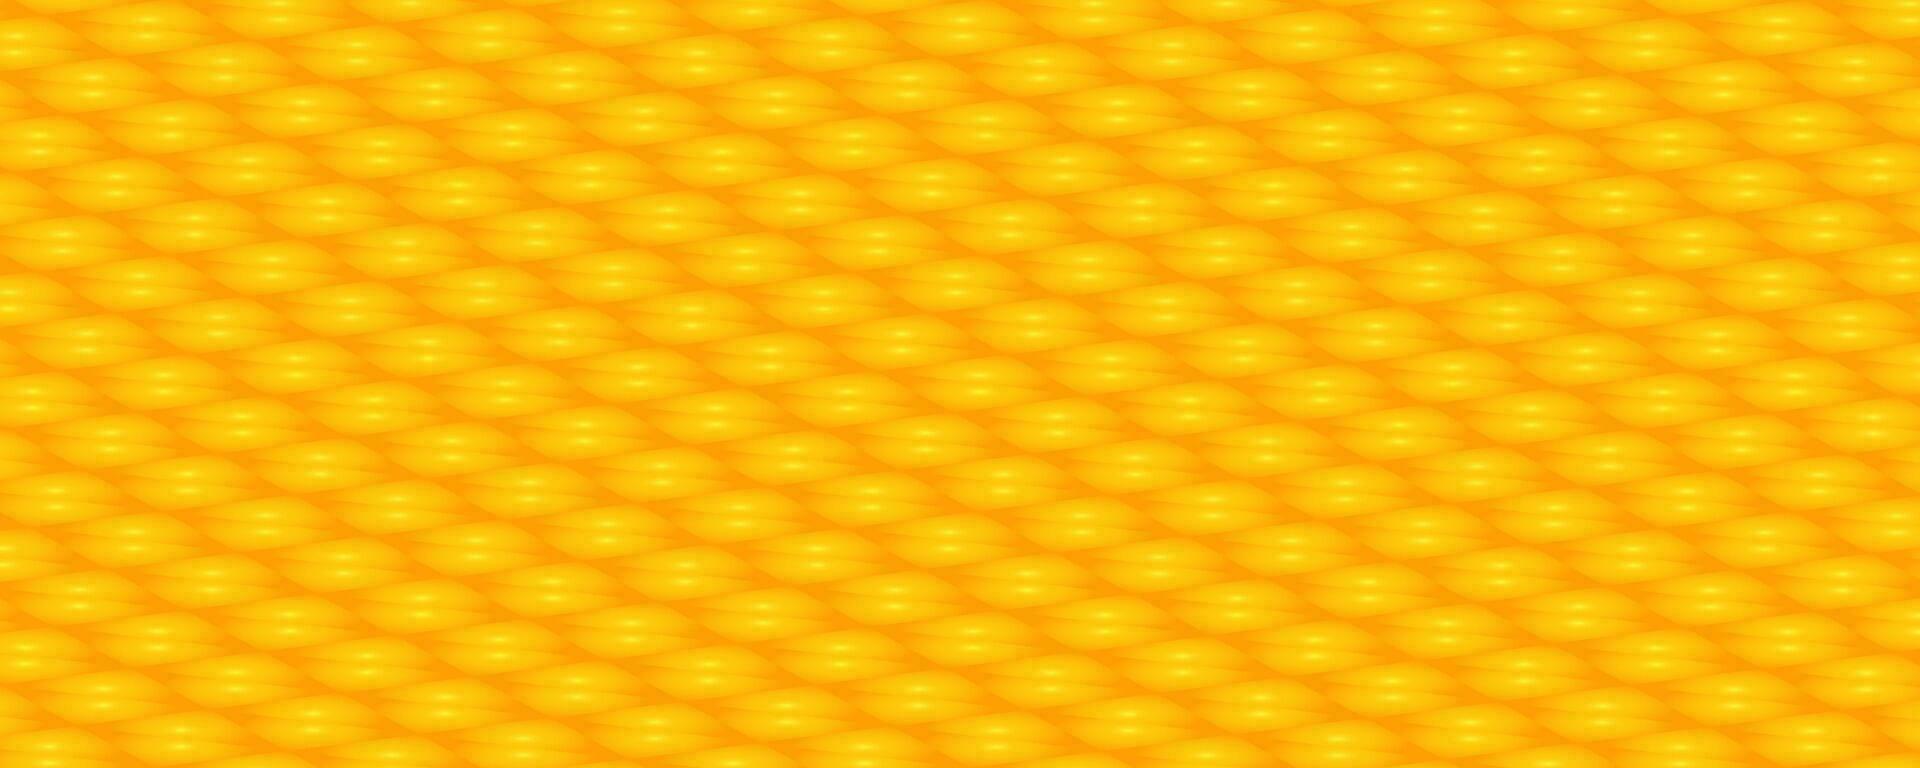 geel en oranje kleuren achtergrond vector illustratie